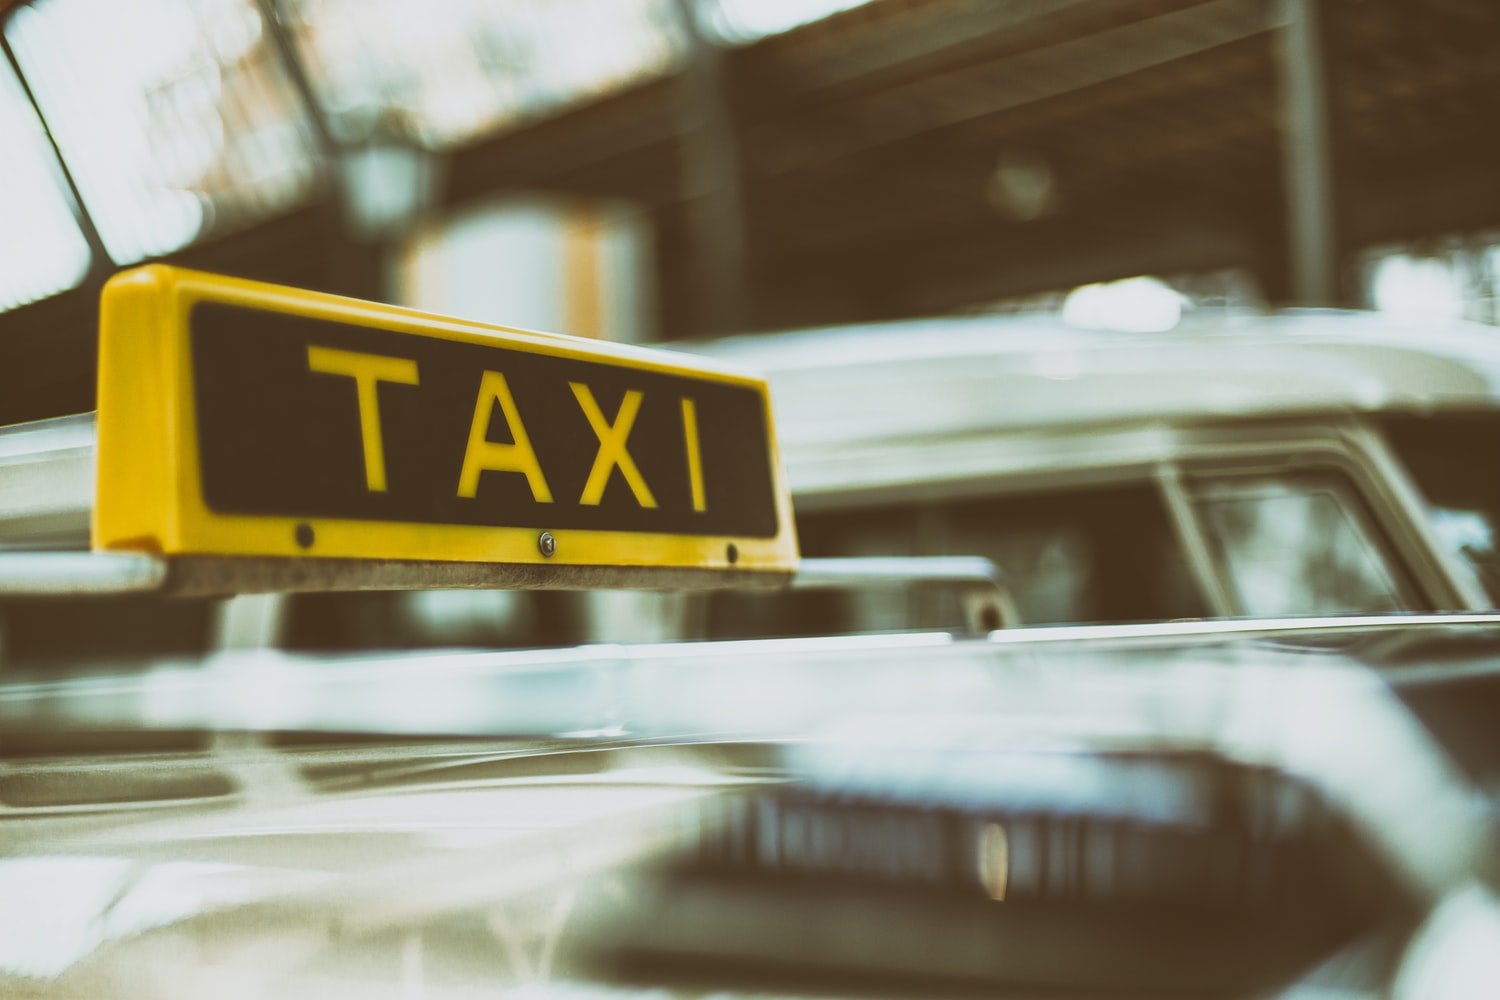 Comment réserver rapidement un taxi à Wallonie ?